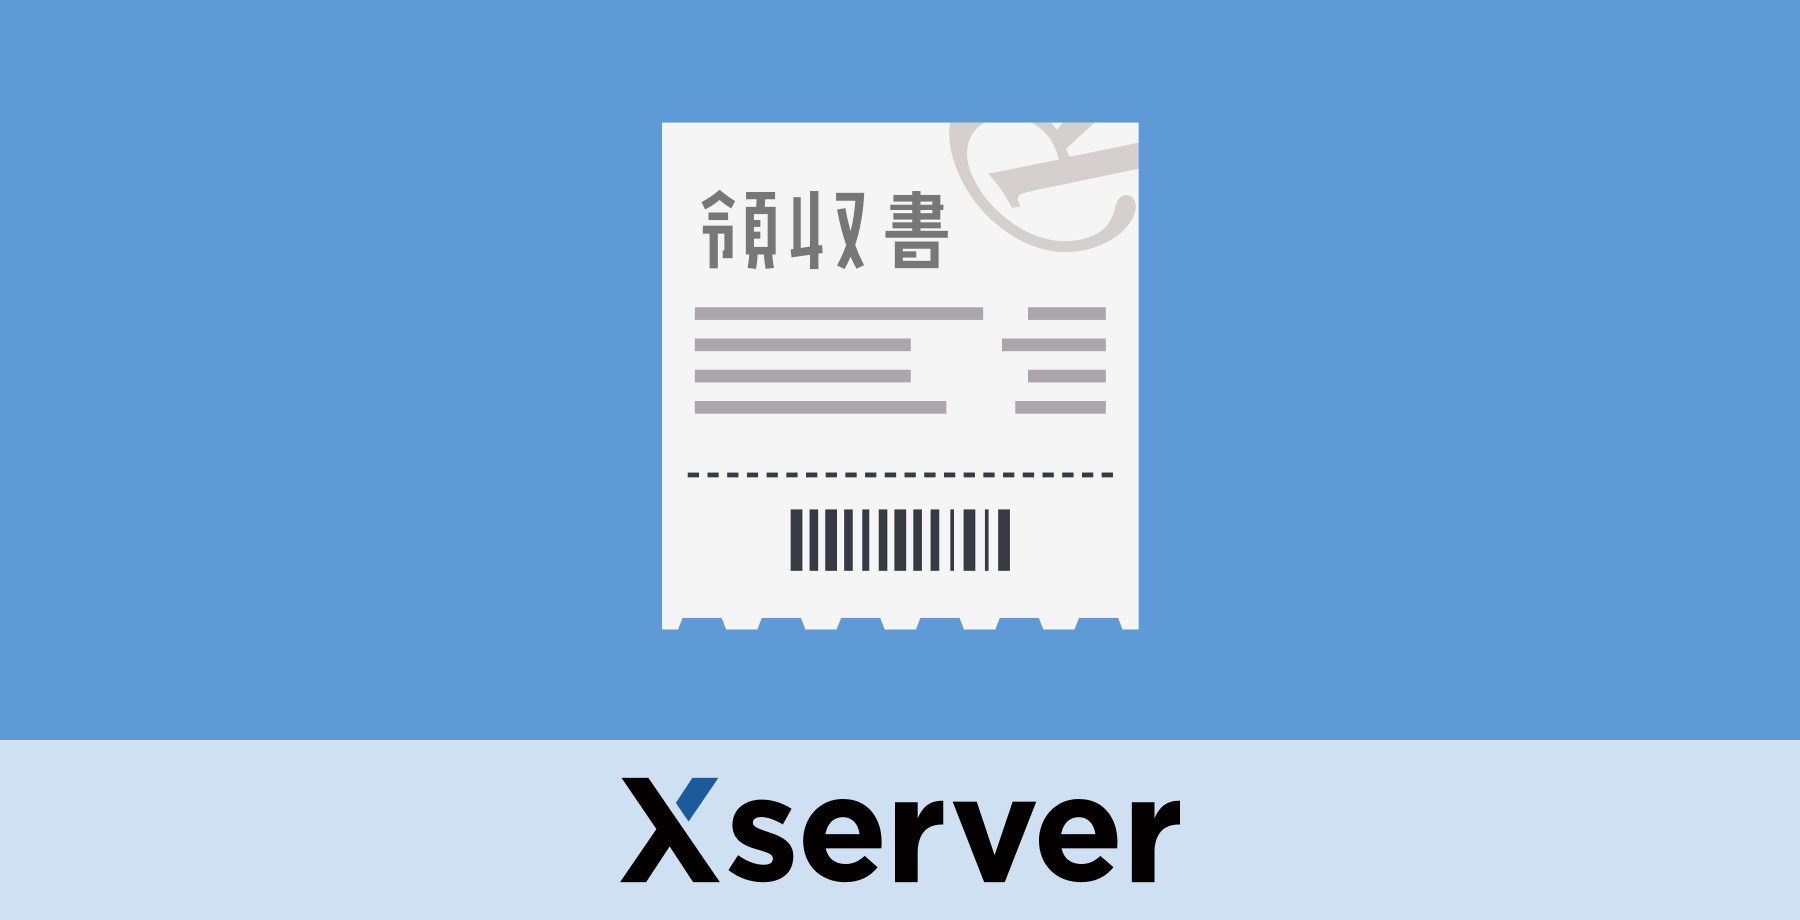 XSERVER 領収書を受け取る方法